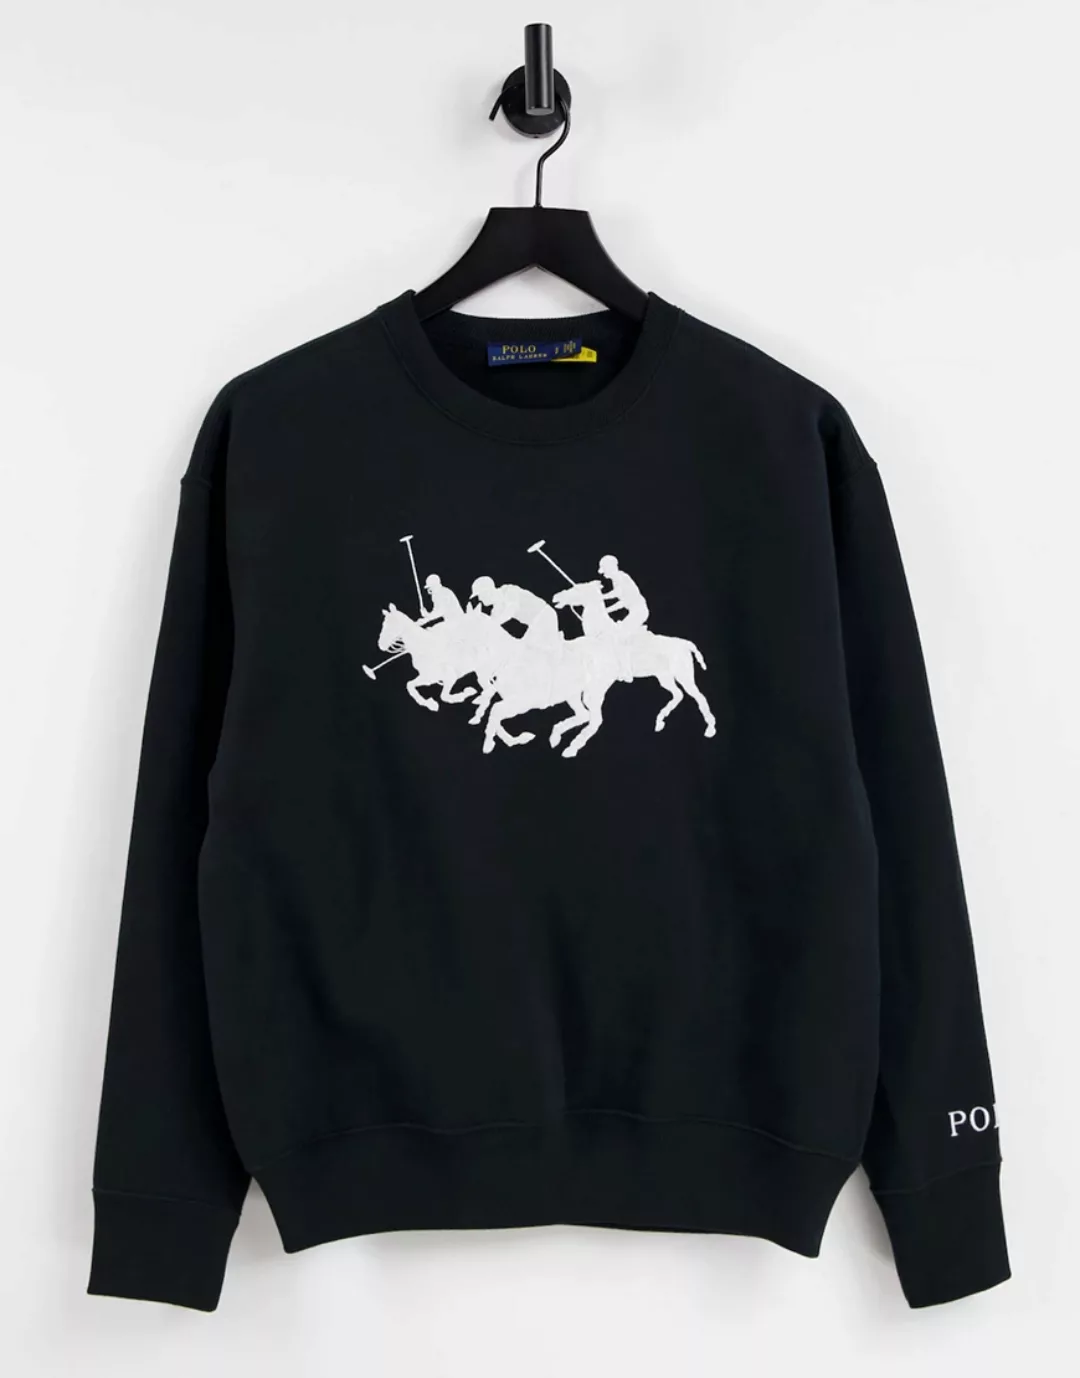 Polo Ralph Lauren – Pullover in Schwarz mit Polospielergruppenmotiv günstig online kaufen